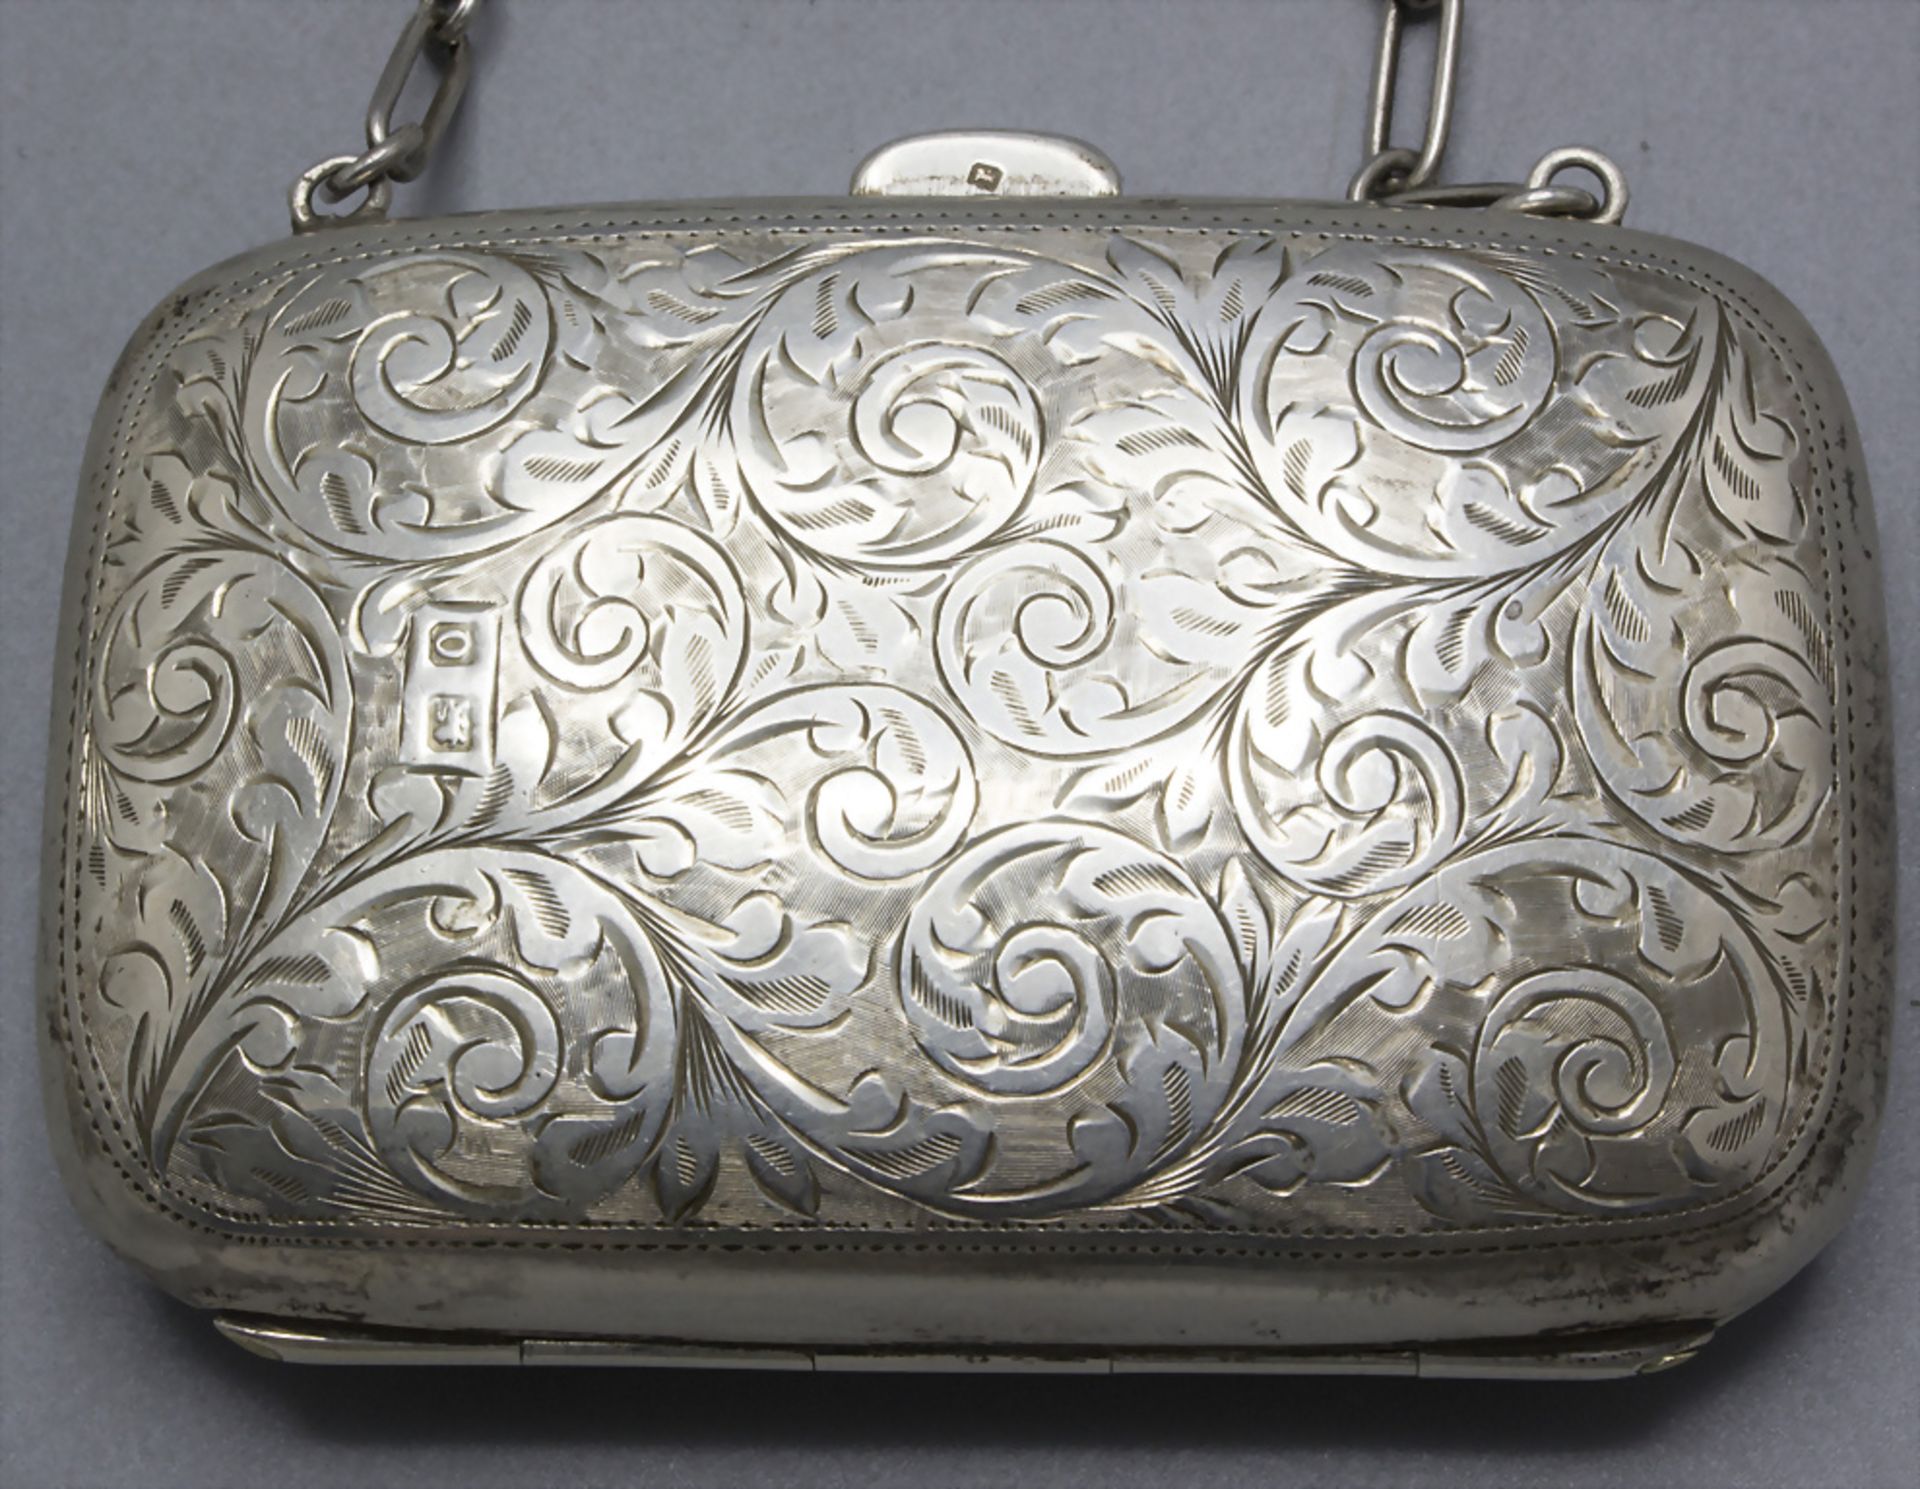 Silber Täschchen/Portemonnaie / A silver purse/wallet, J. Gloster Ltd., Birmingham, 1913 - Bild 3 aus 6